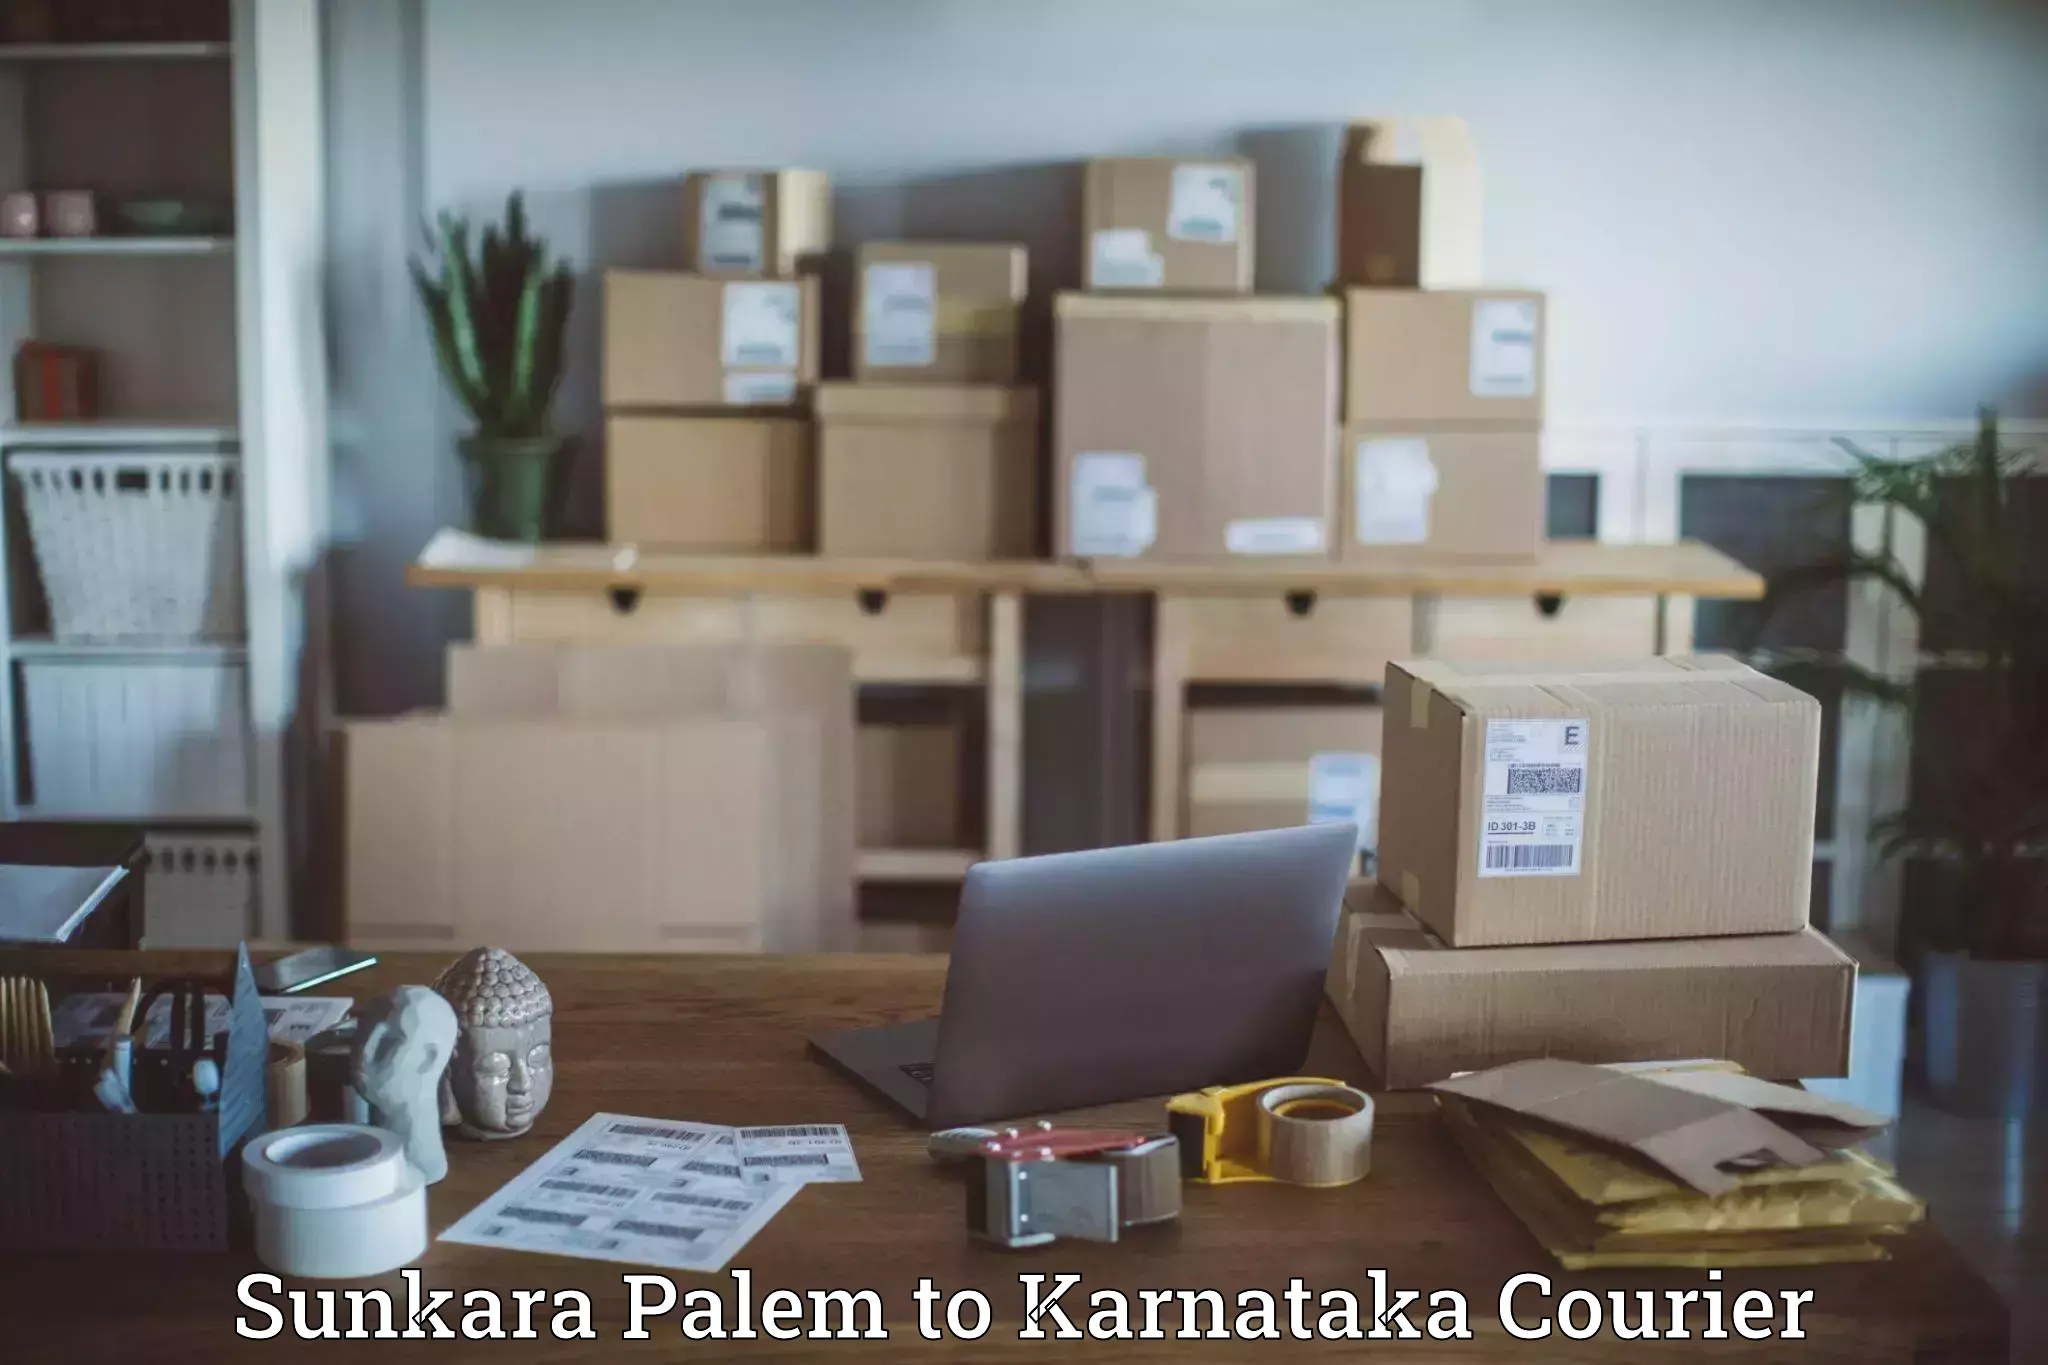 High-speed parcel service Sunkara Palem to Hosadurga